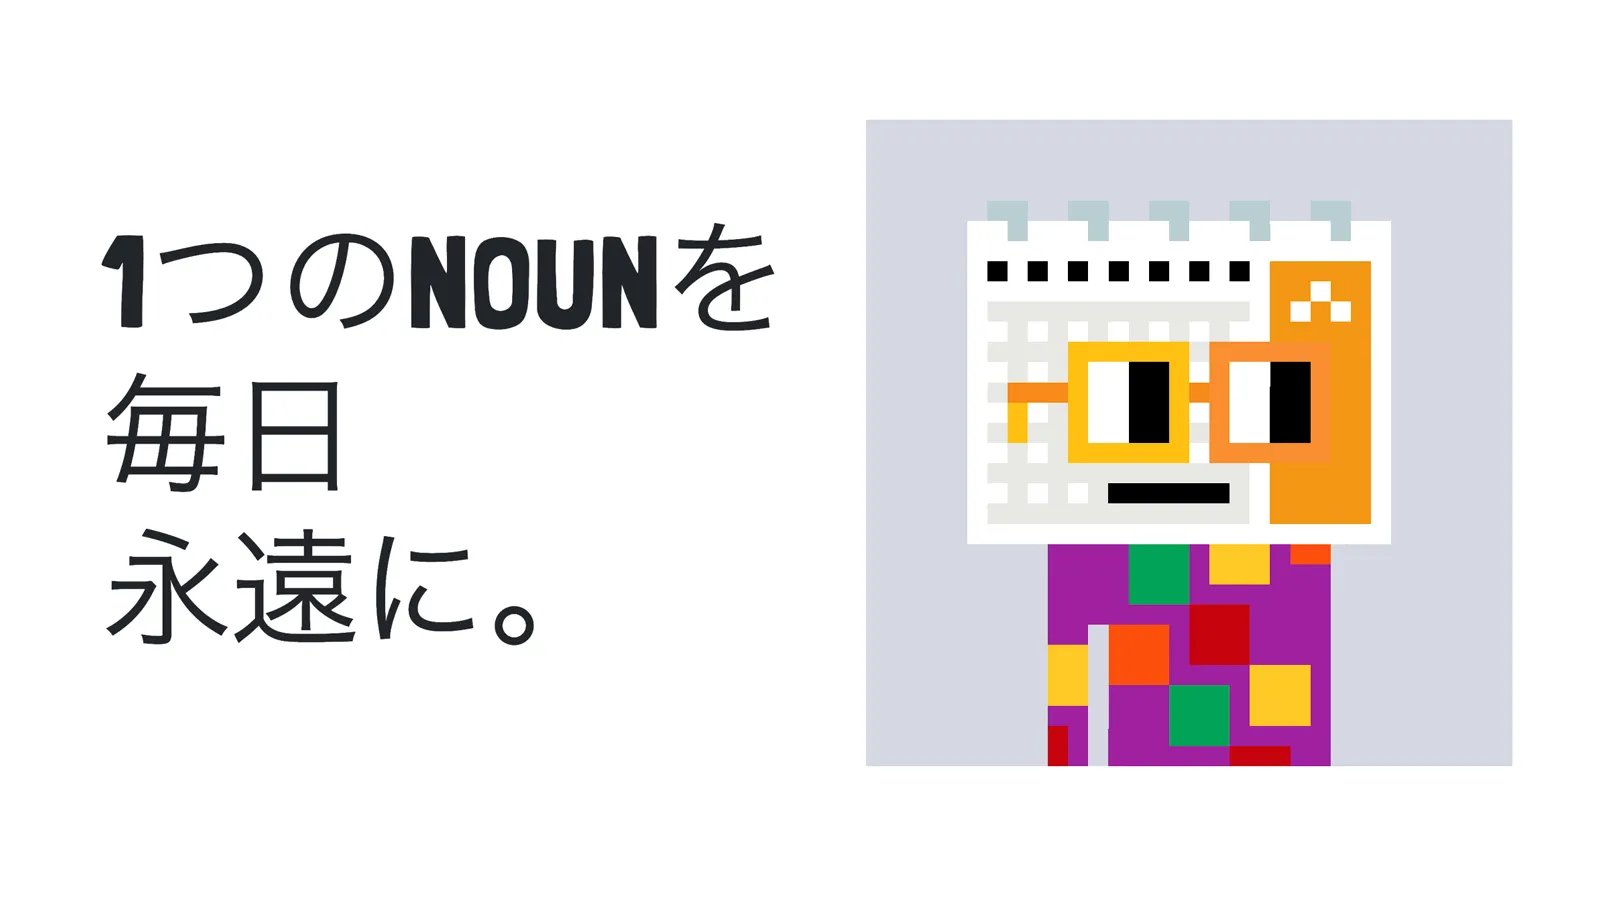 真のDAOであると名高い「Nouns DAO」へNFT購入挑戦プロジェクト